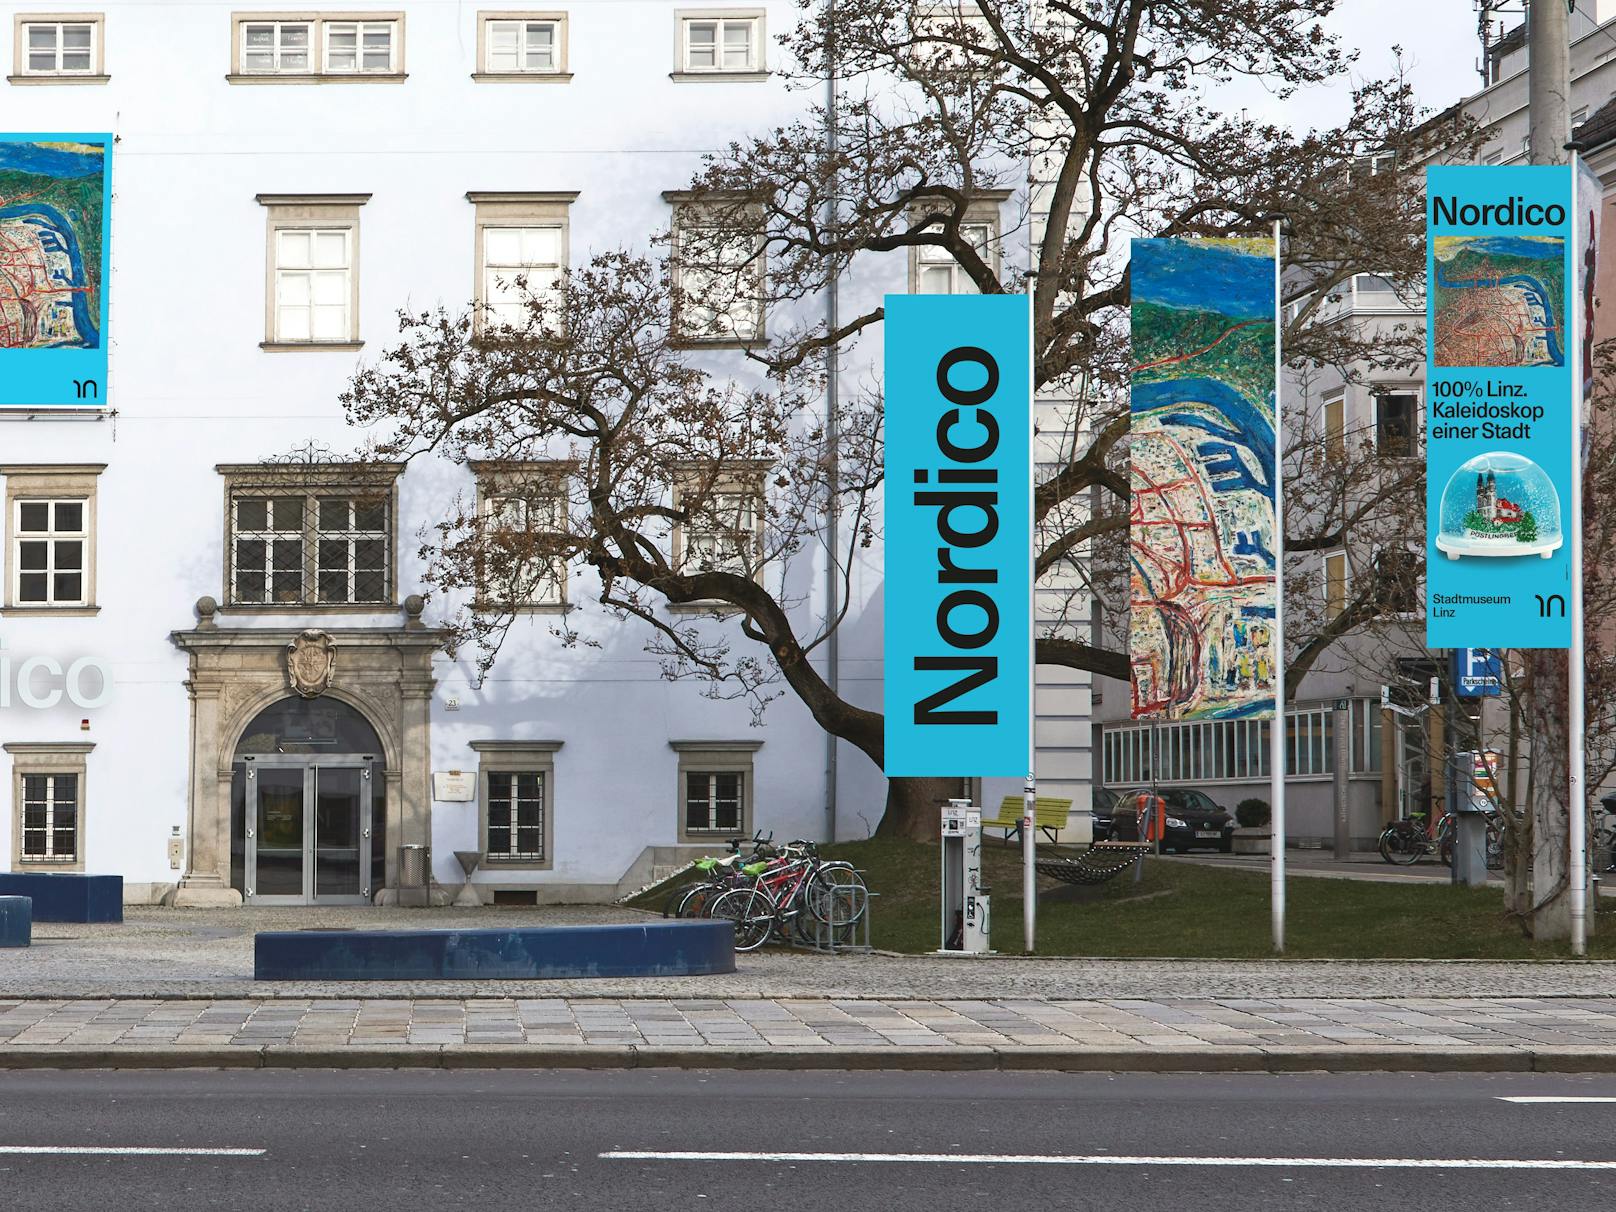 Die Linzer Stadtmuseen Nordico und Lentos bekommen ein neues Erscheinungsbild.